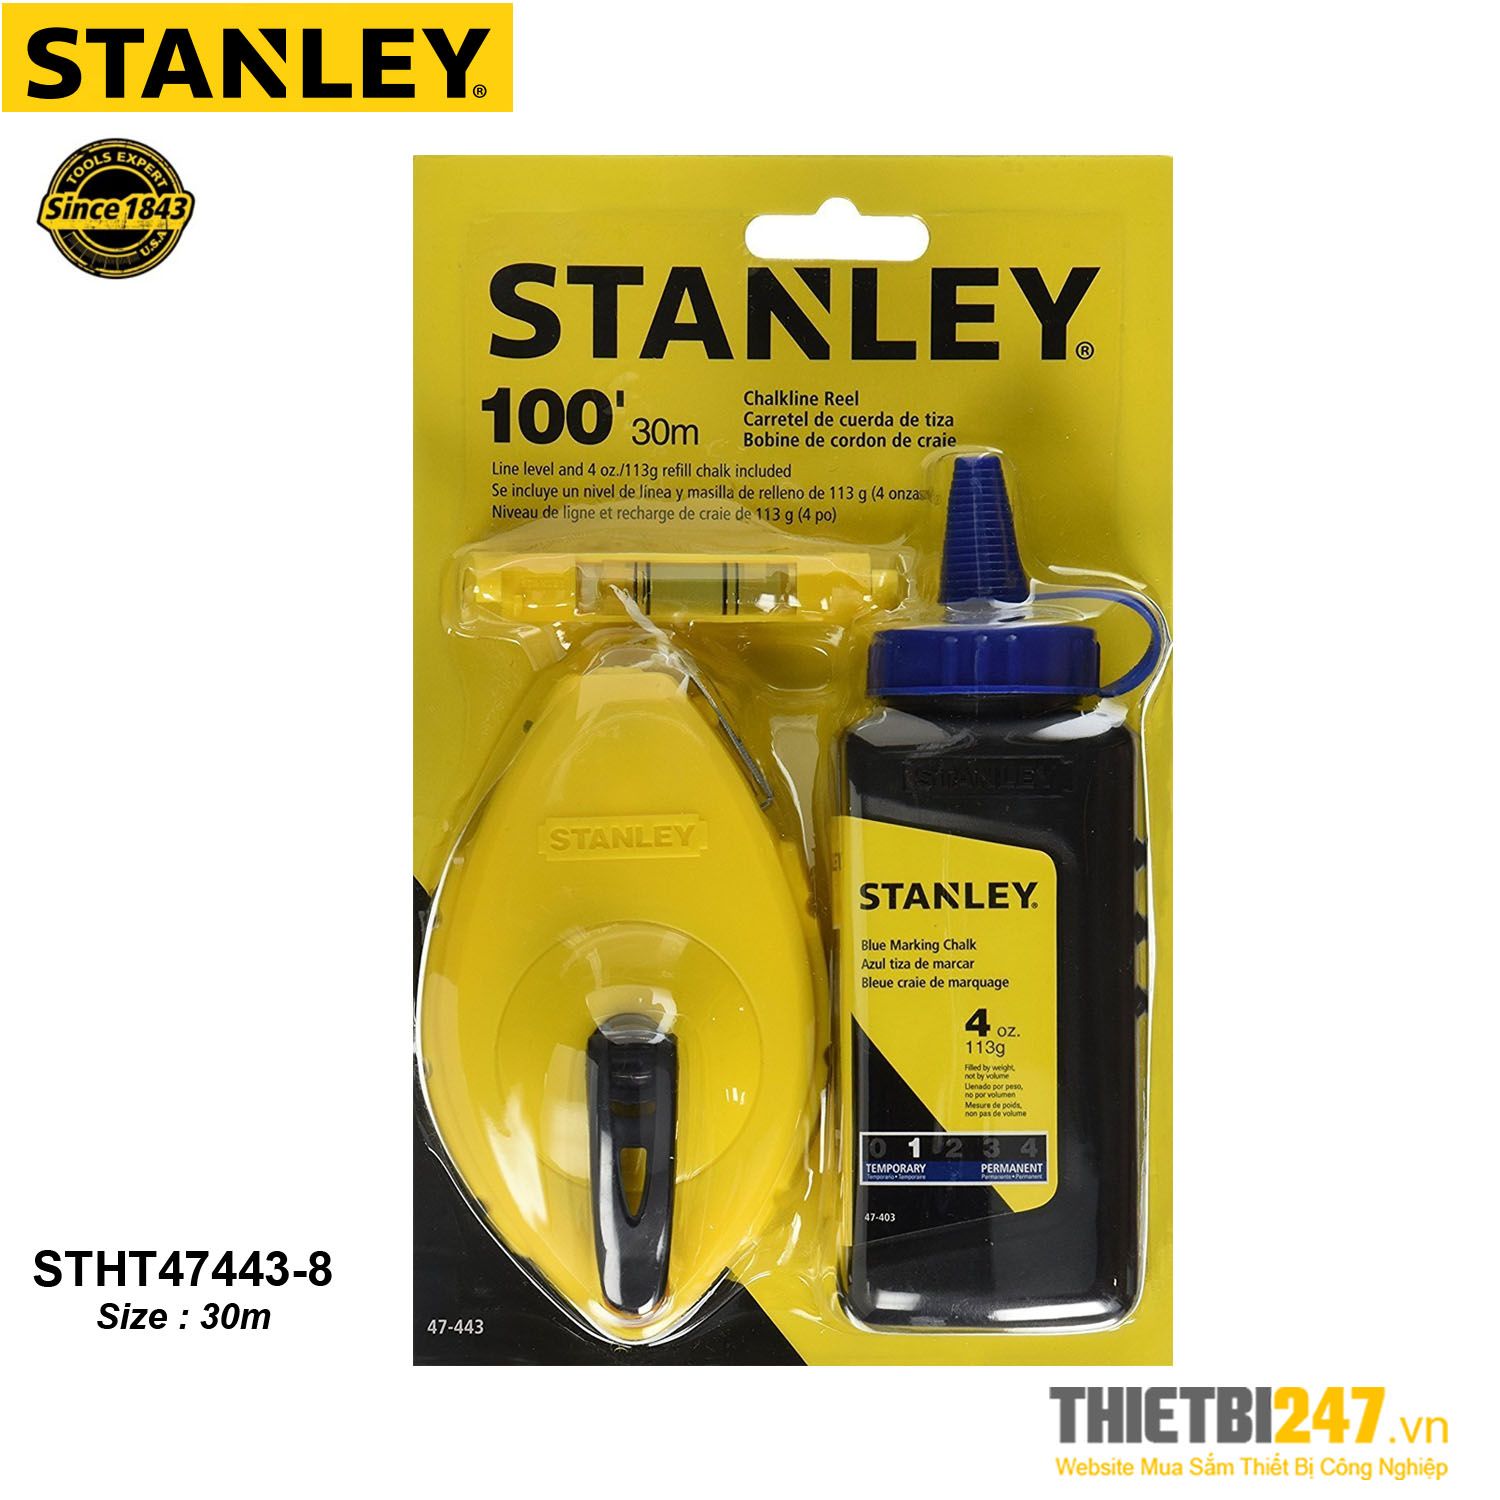 Bật mực 30m và hộp mực Stanley STHT47443-8